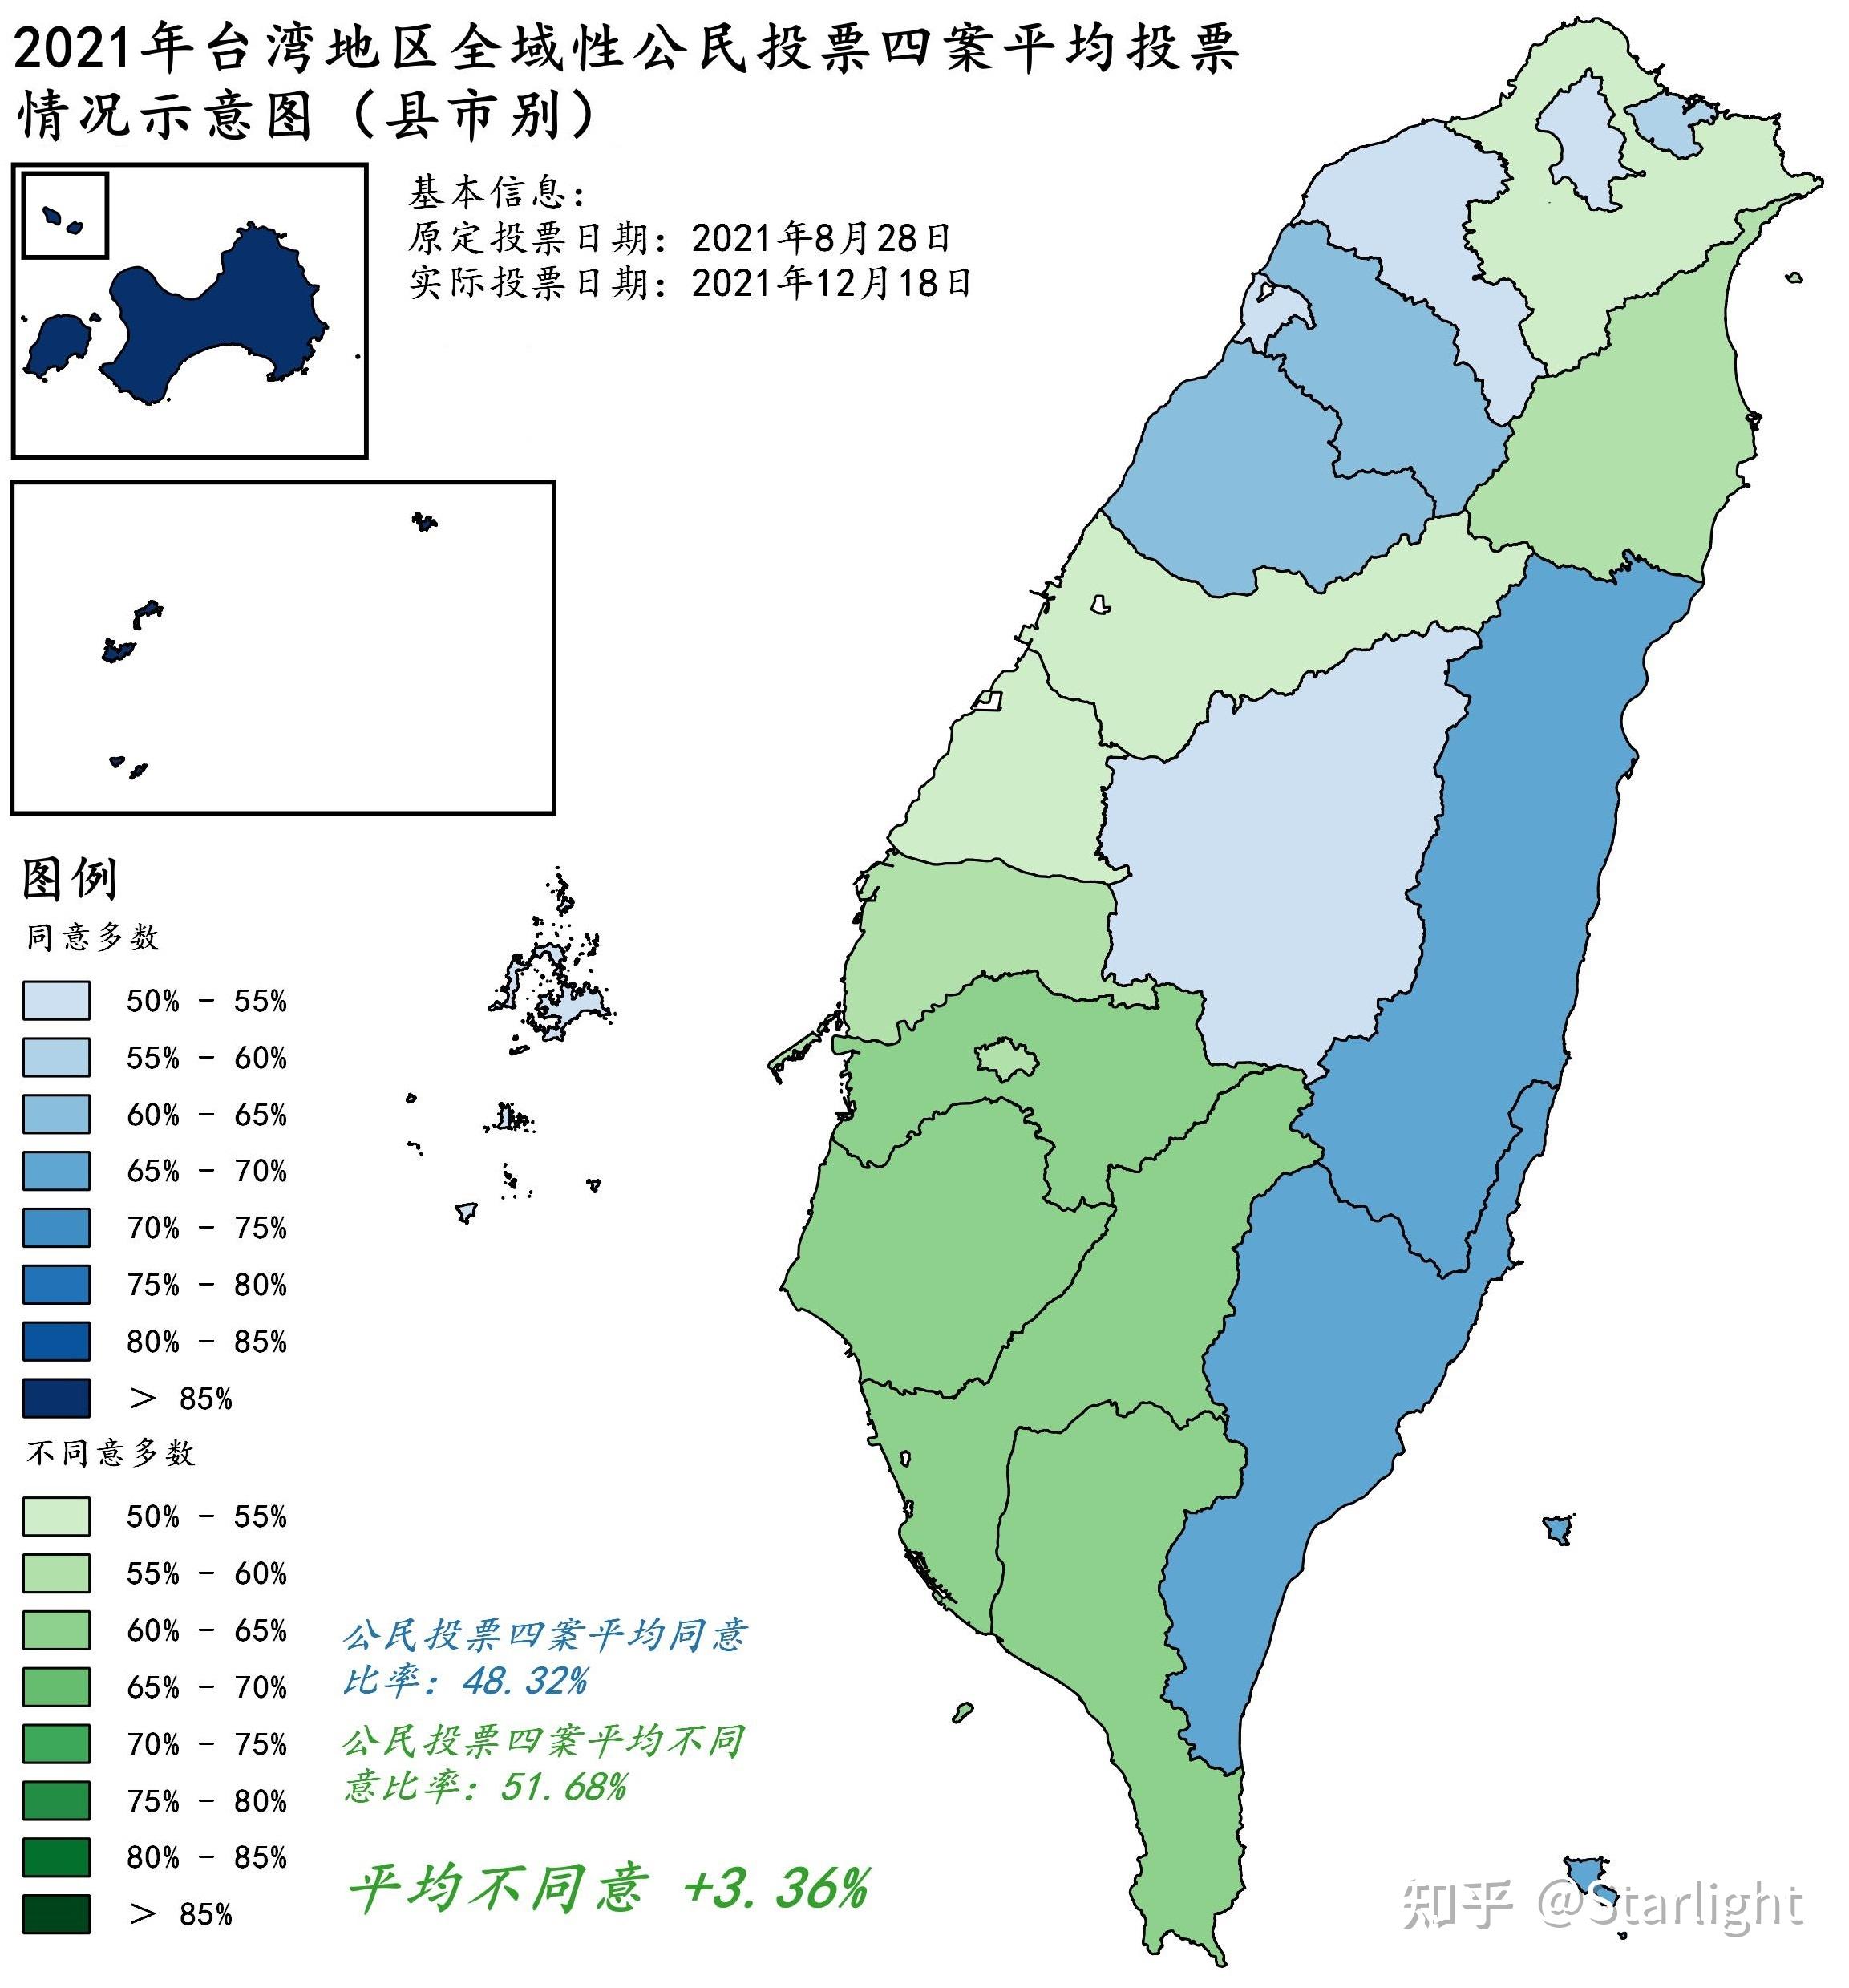 2021年台湾地区全域性公民投票案投票结果(四案联统——全台篇)